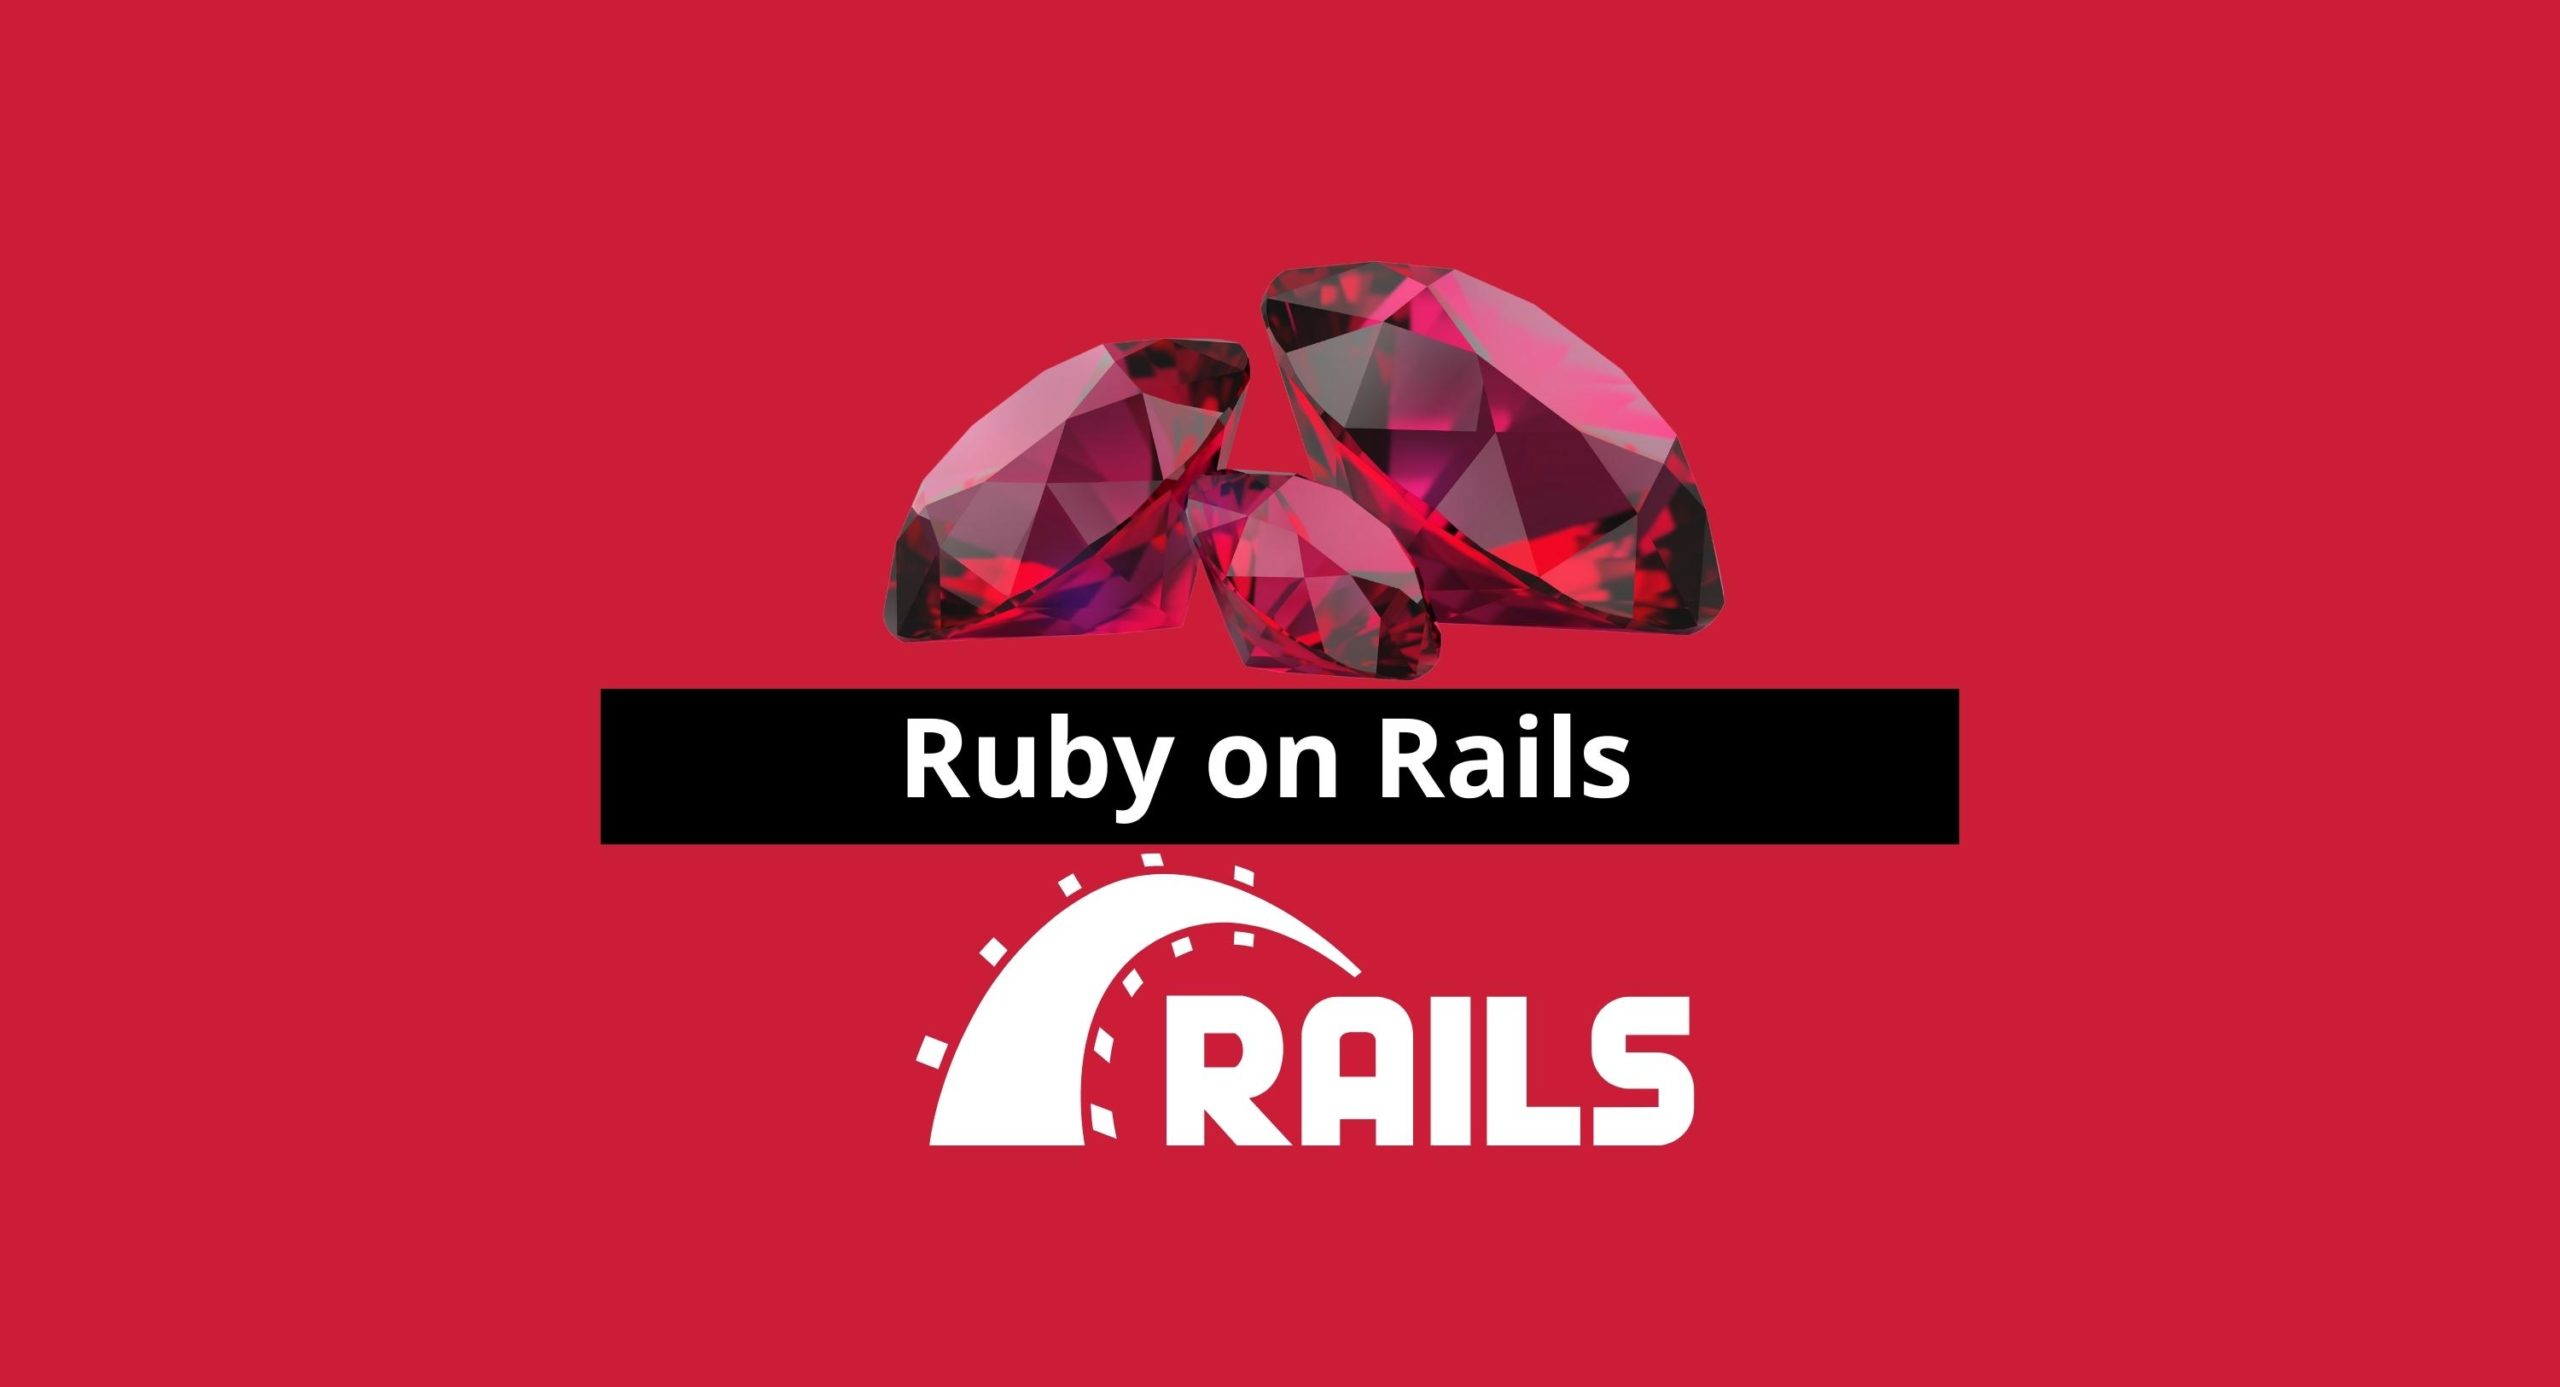 Why Ruby on Rails